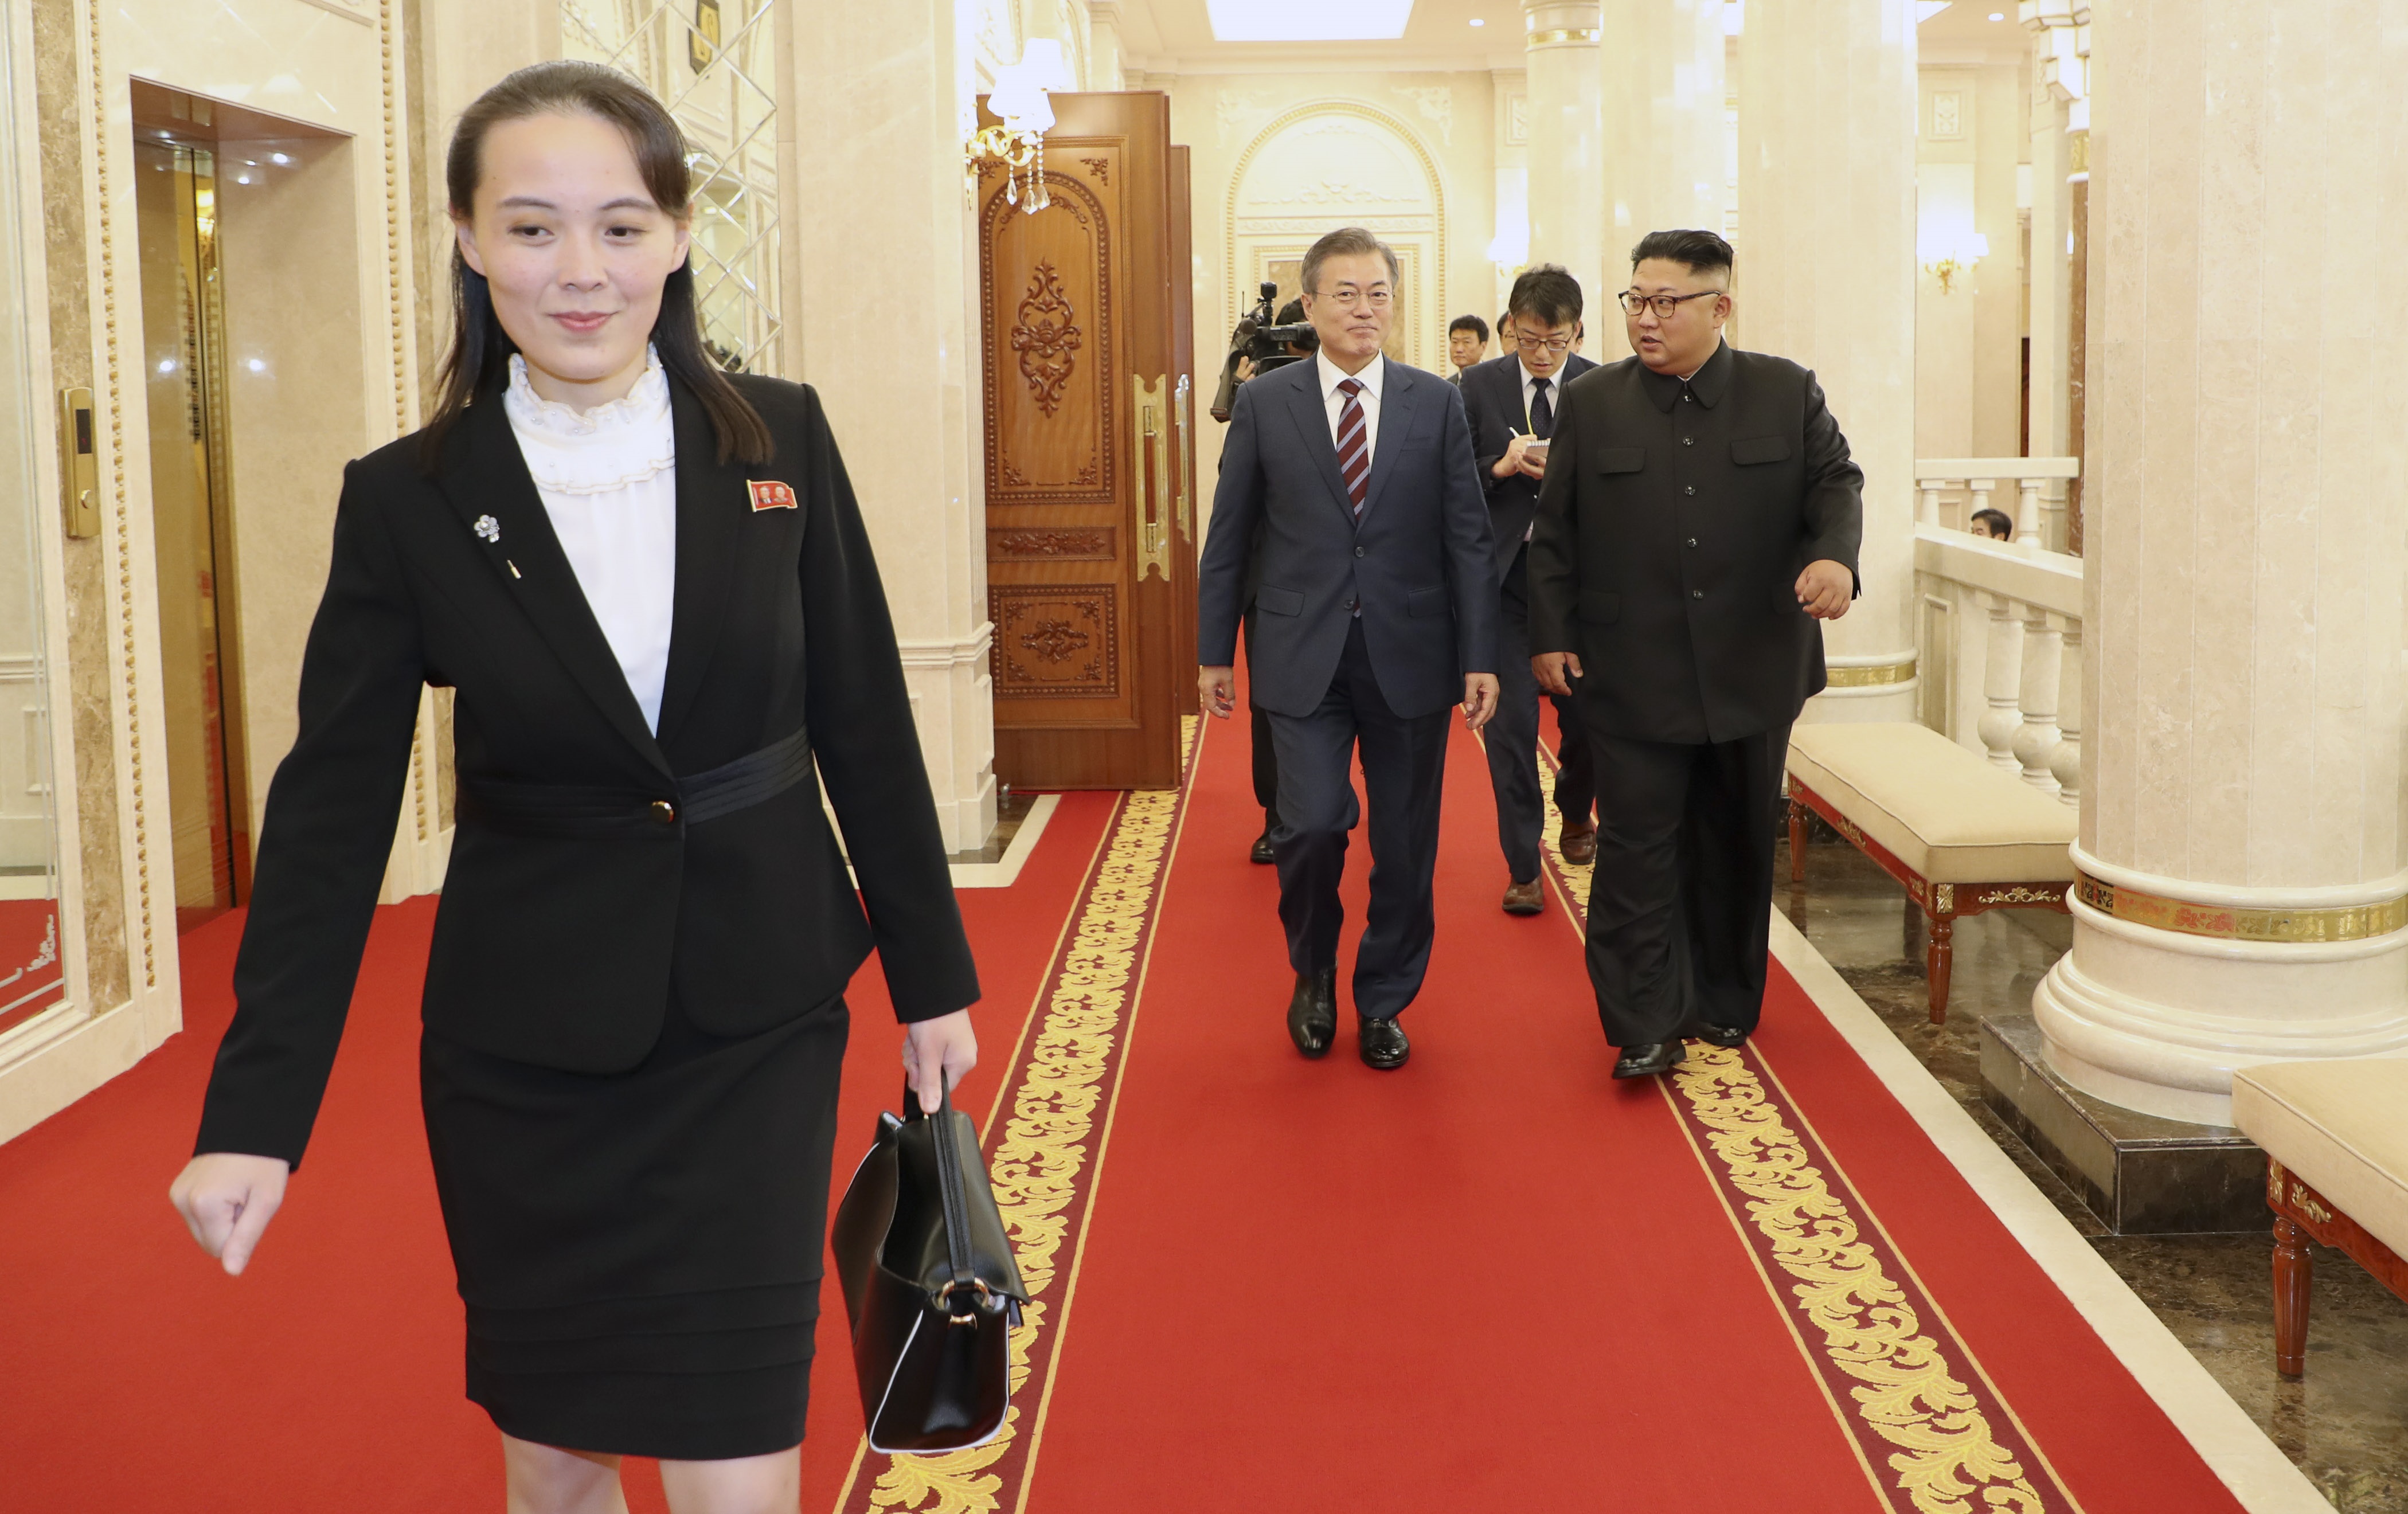 Kim Yo Jong es la actual subdirectora primera del comité Central del Partido de los Trabajadores de Corea, y hermana del líder del país, Kim Jong Un (RYU SEUNG-IL / ZUMA PRESS / CONTACTOPHOTO)
